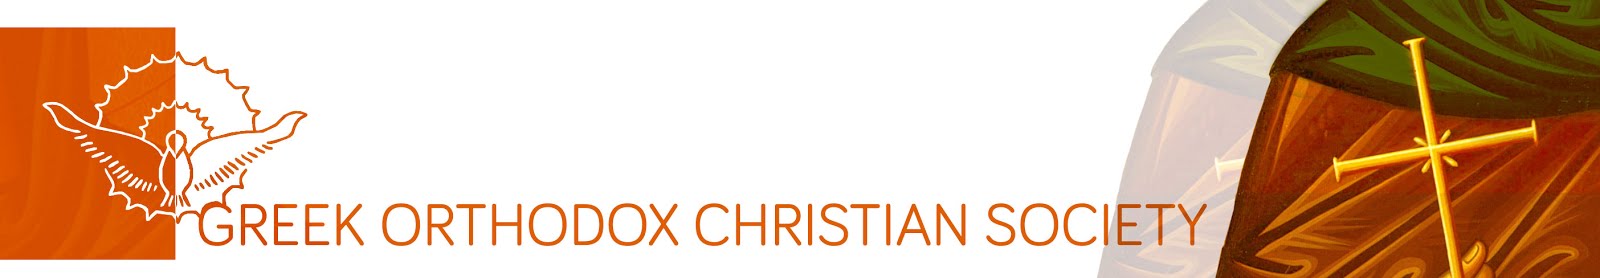 Greek Orthodox Christian Society